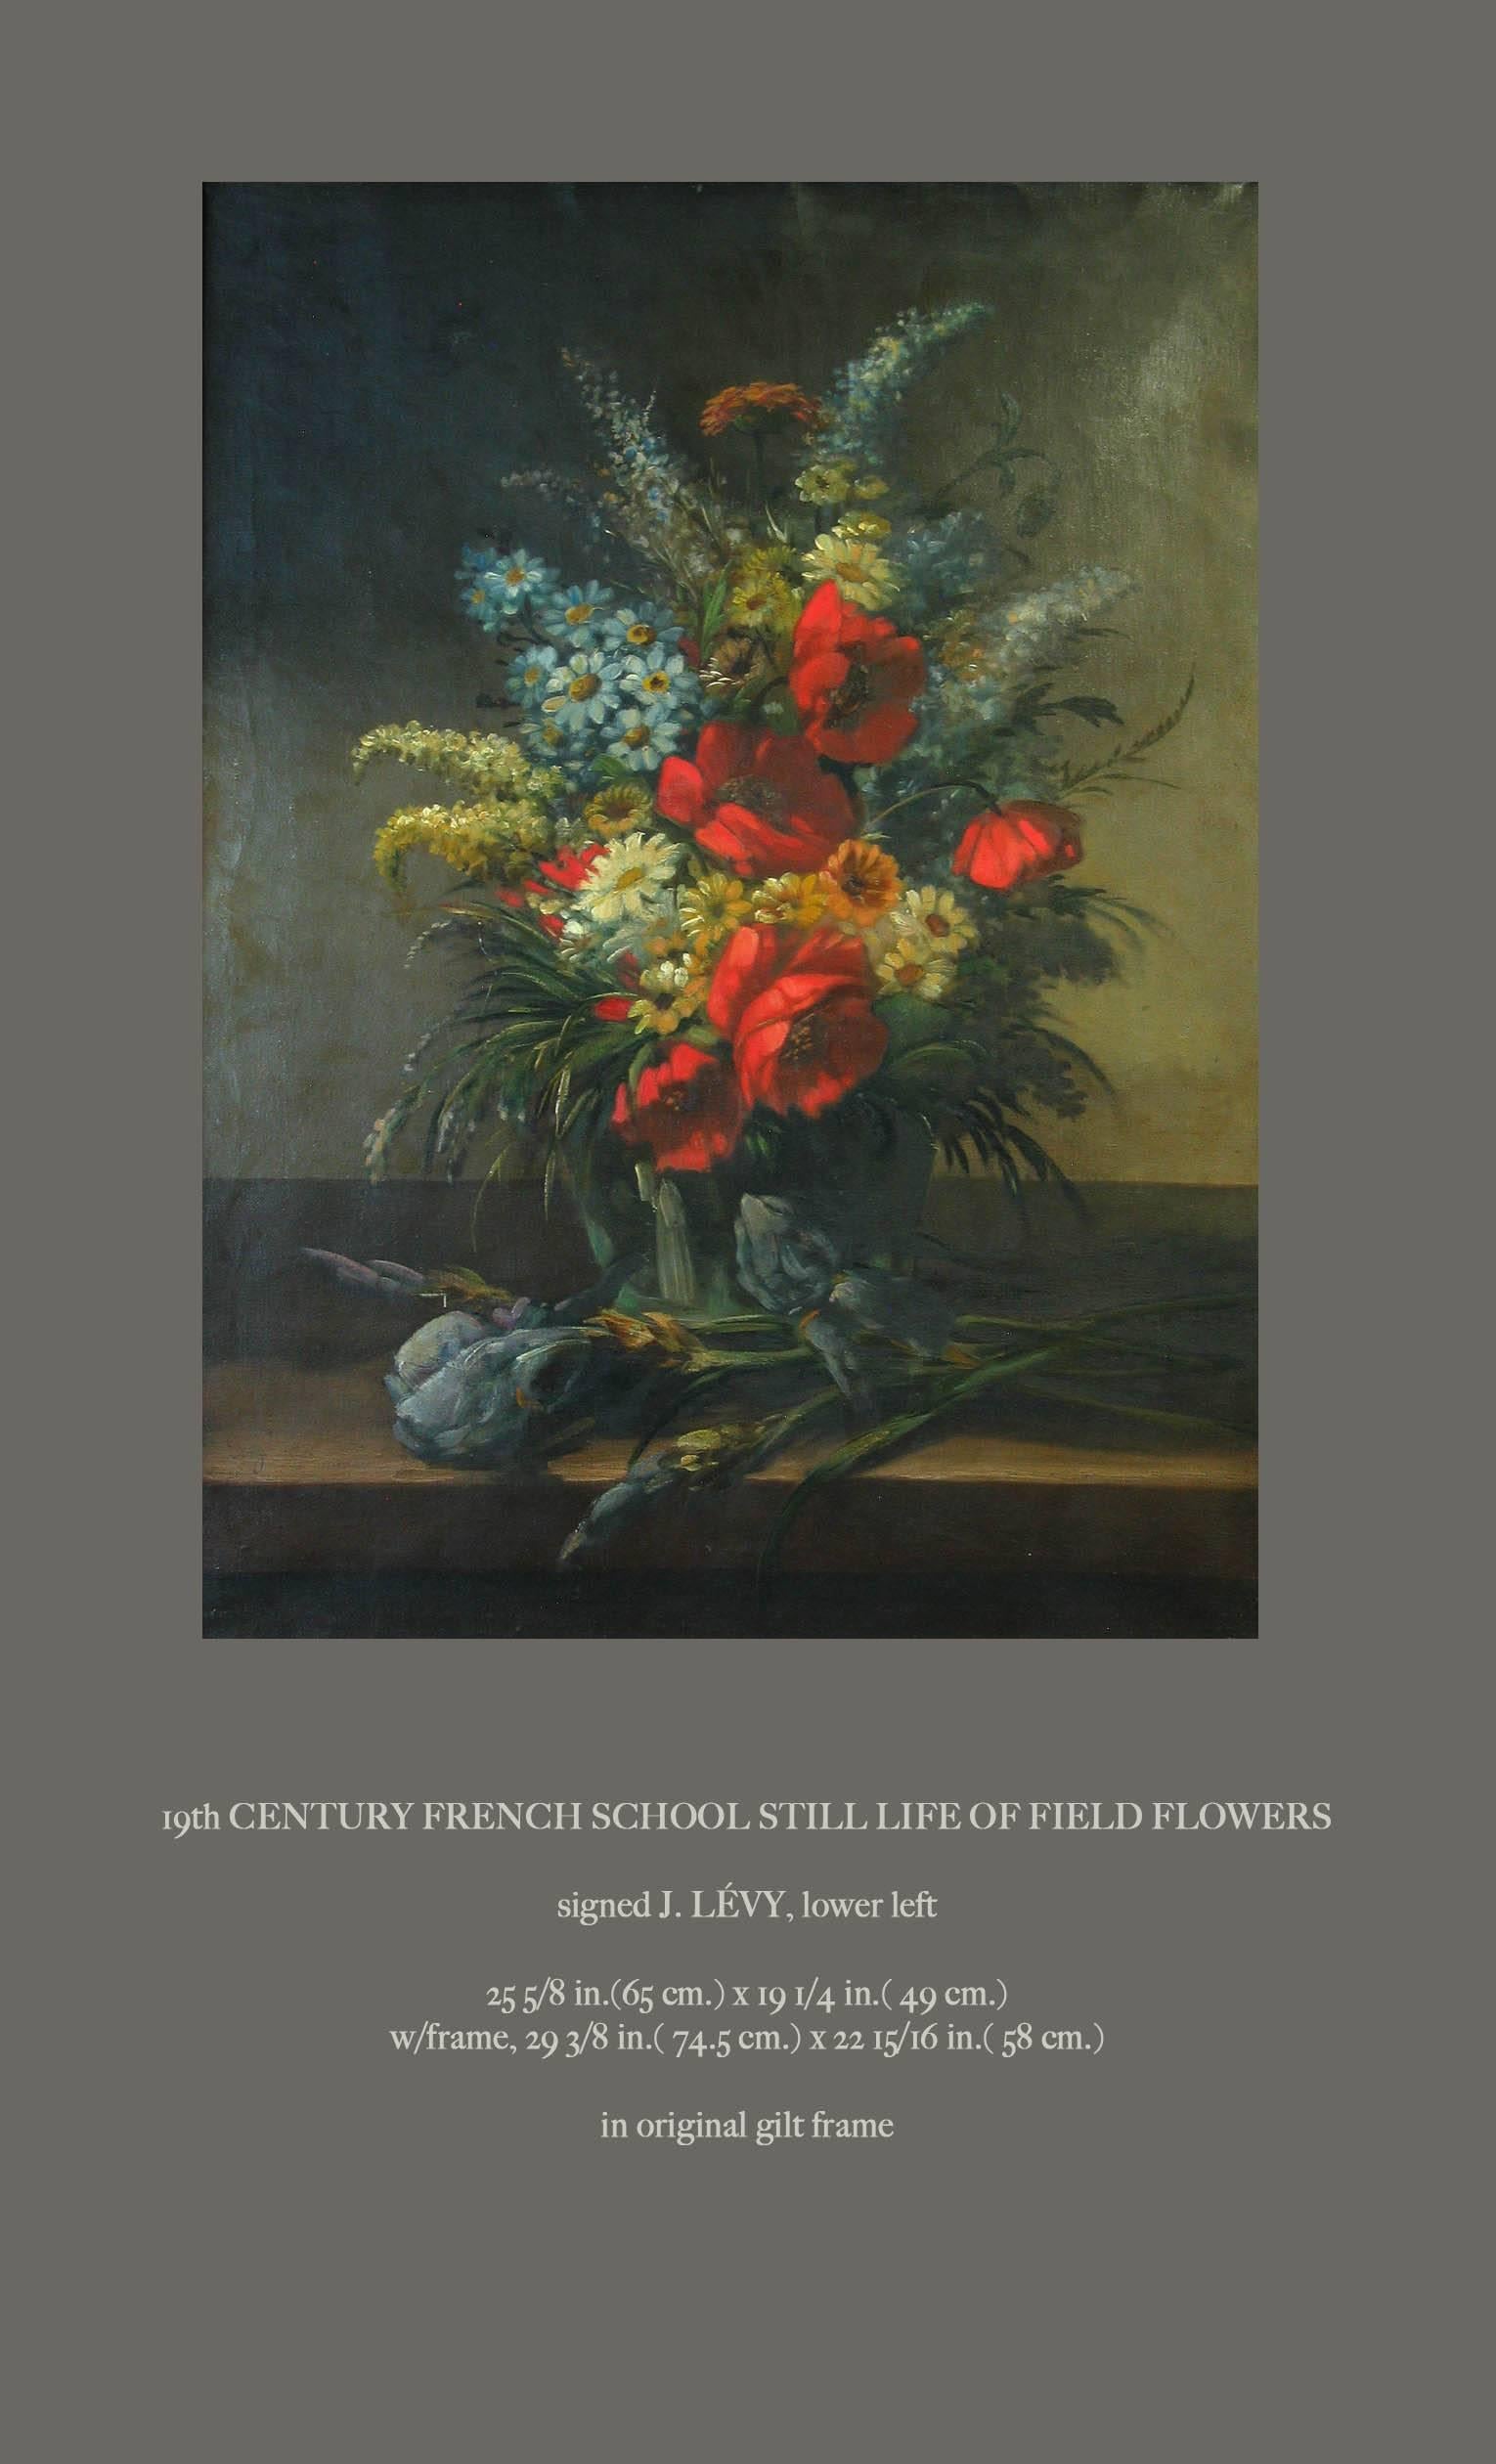 Nature morte de l'école française du 19e siècle aux couleurs vives et aux fleurs des champs
Signé J. Levy, en bas à gauche.
La peinture mesure : 25 5/8